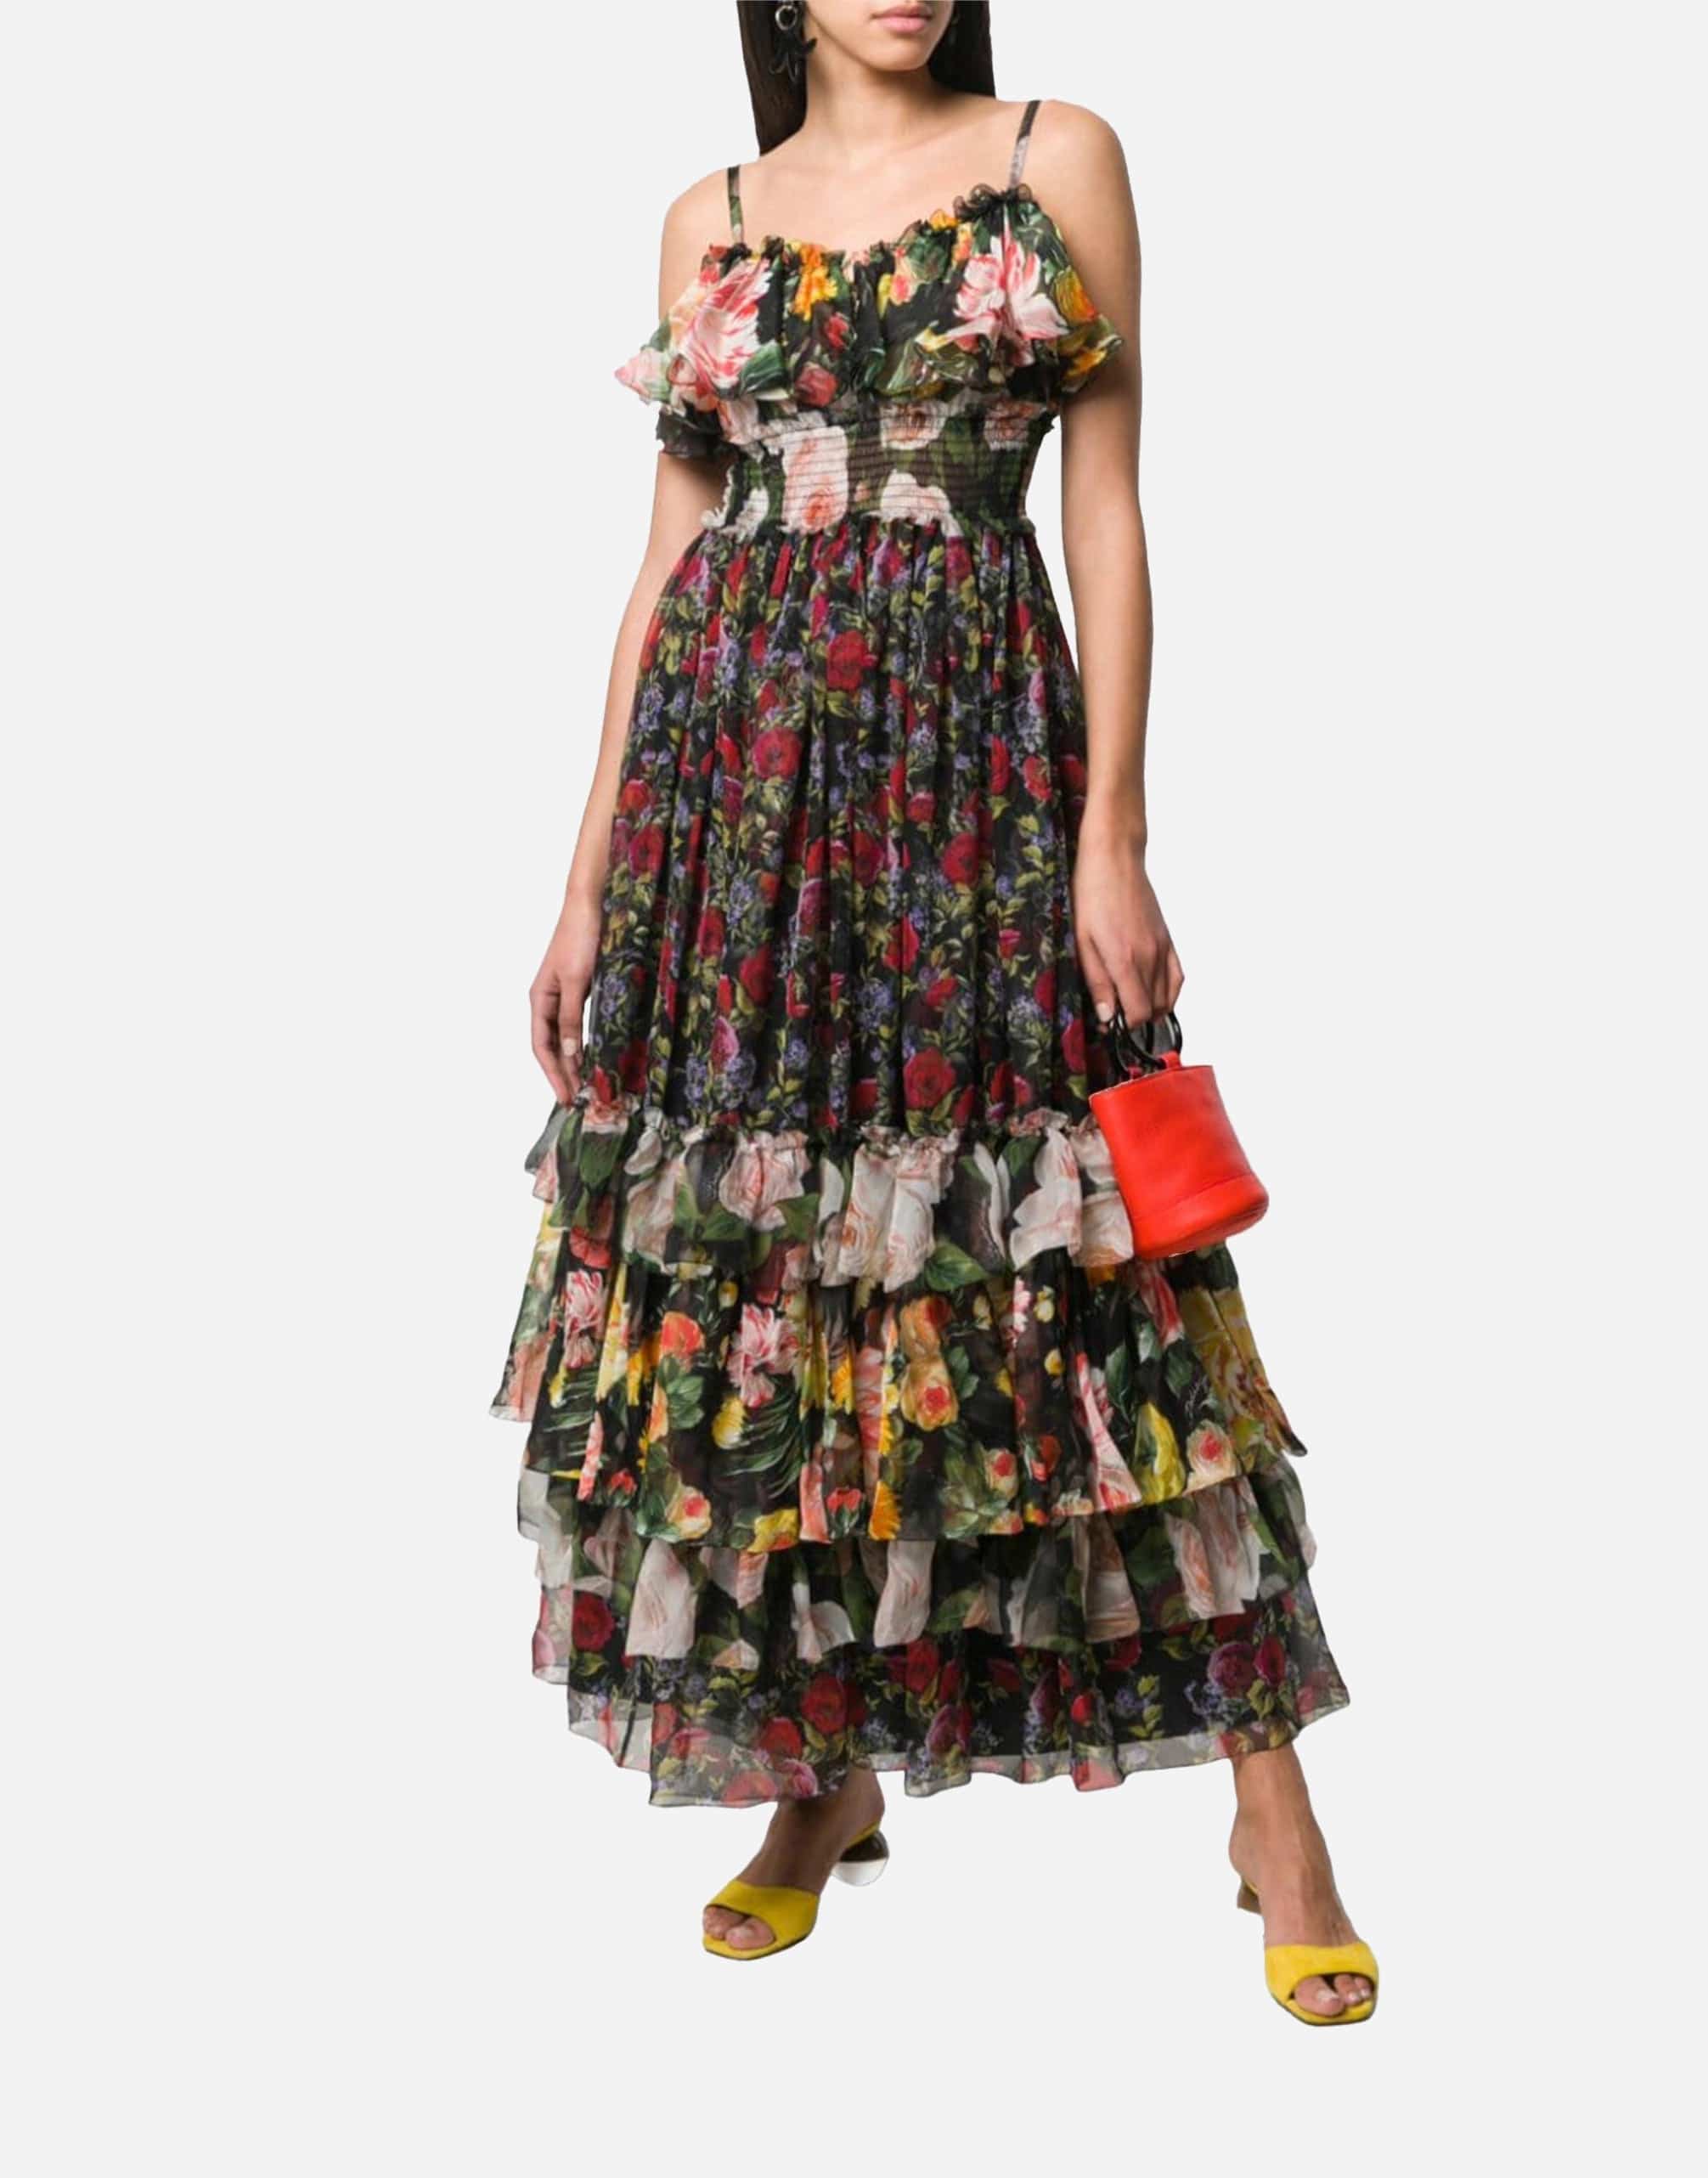 Floral Print Chiffon Layered Dress